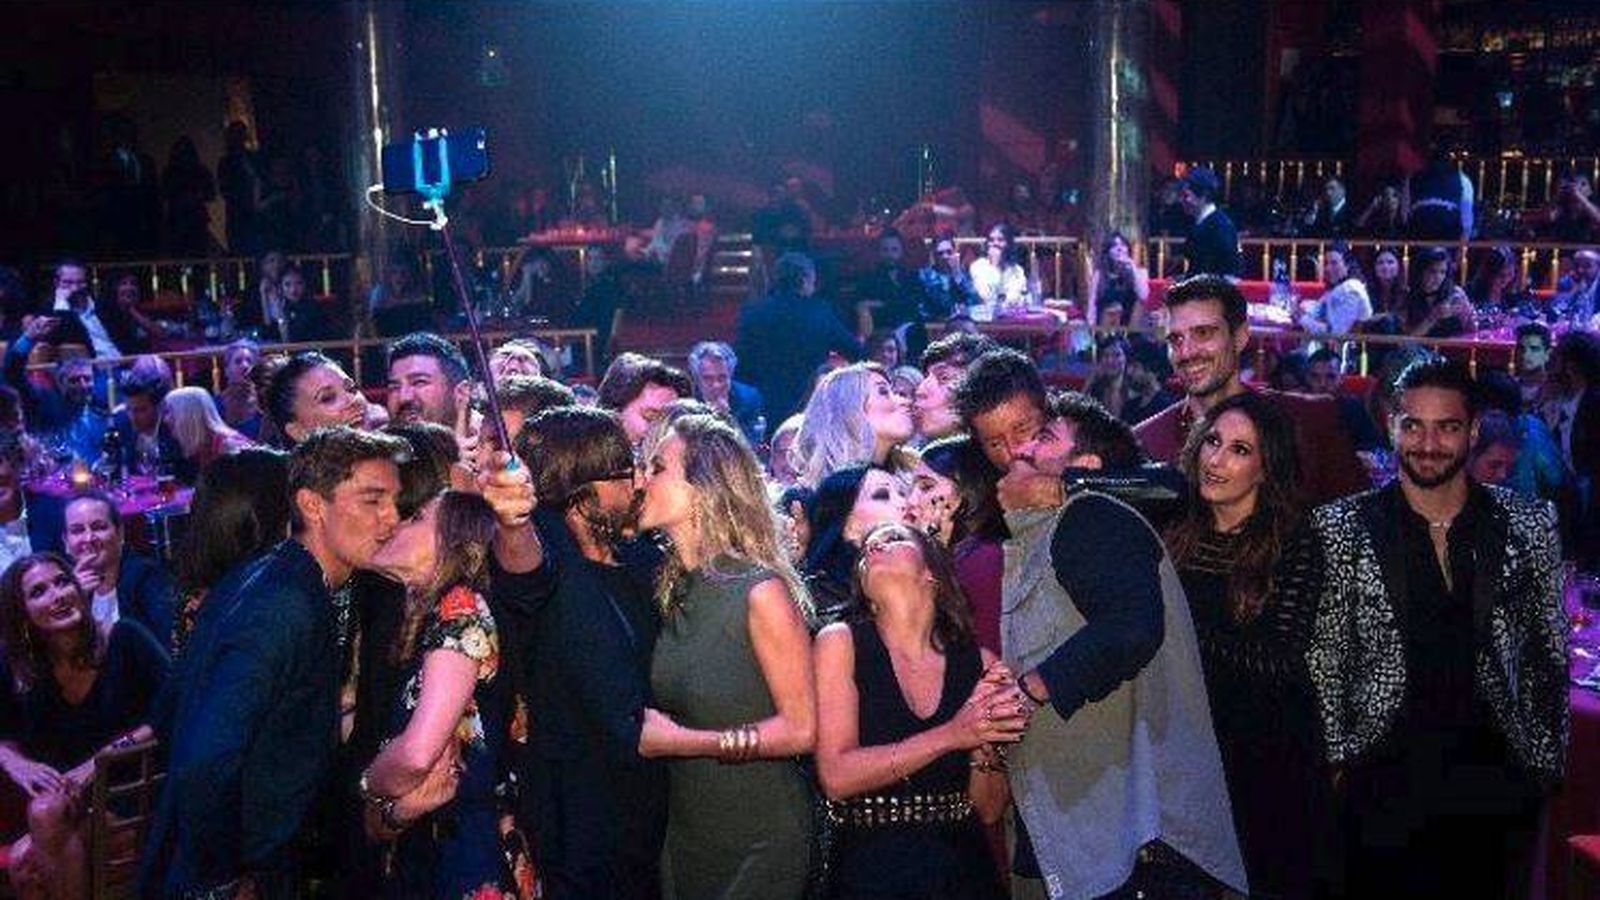 Foto: Imagen del selfie que se sacaron algunos de los invitados a la fiesta de Los 40. (Instagram)